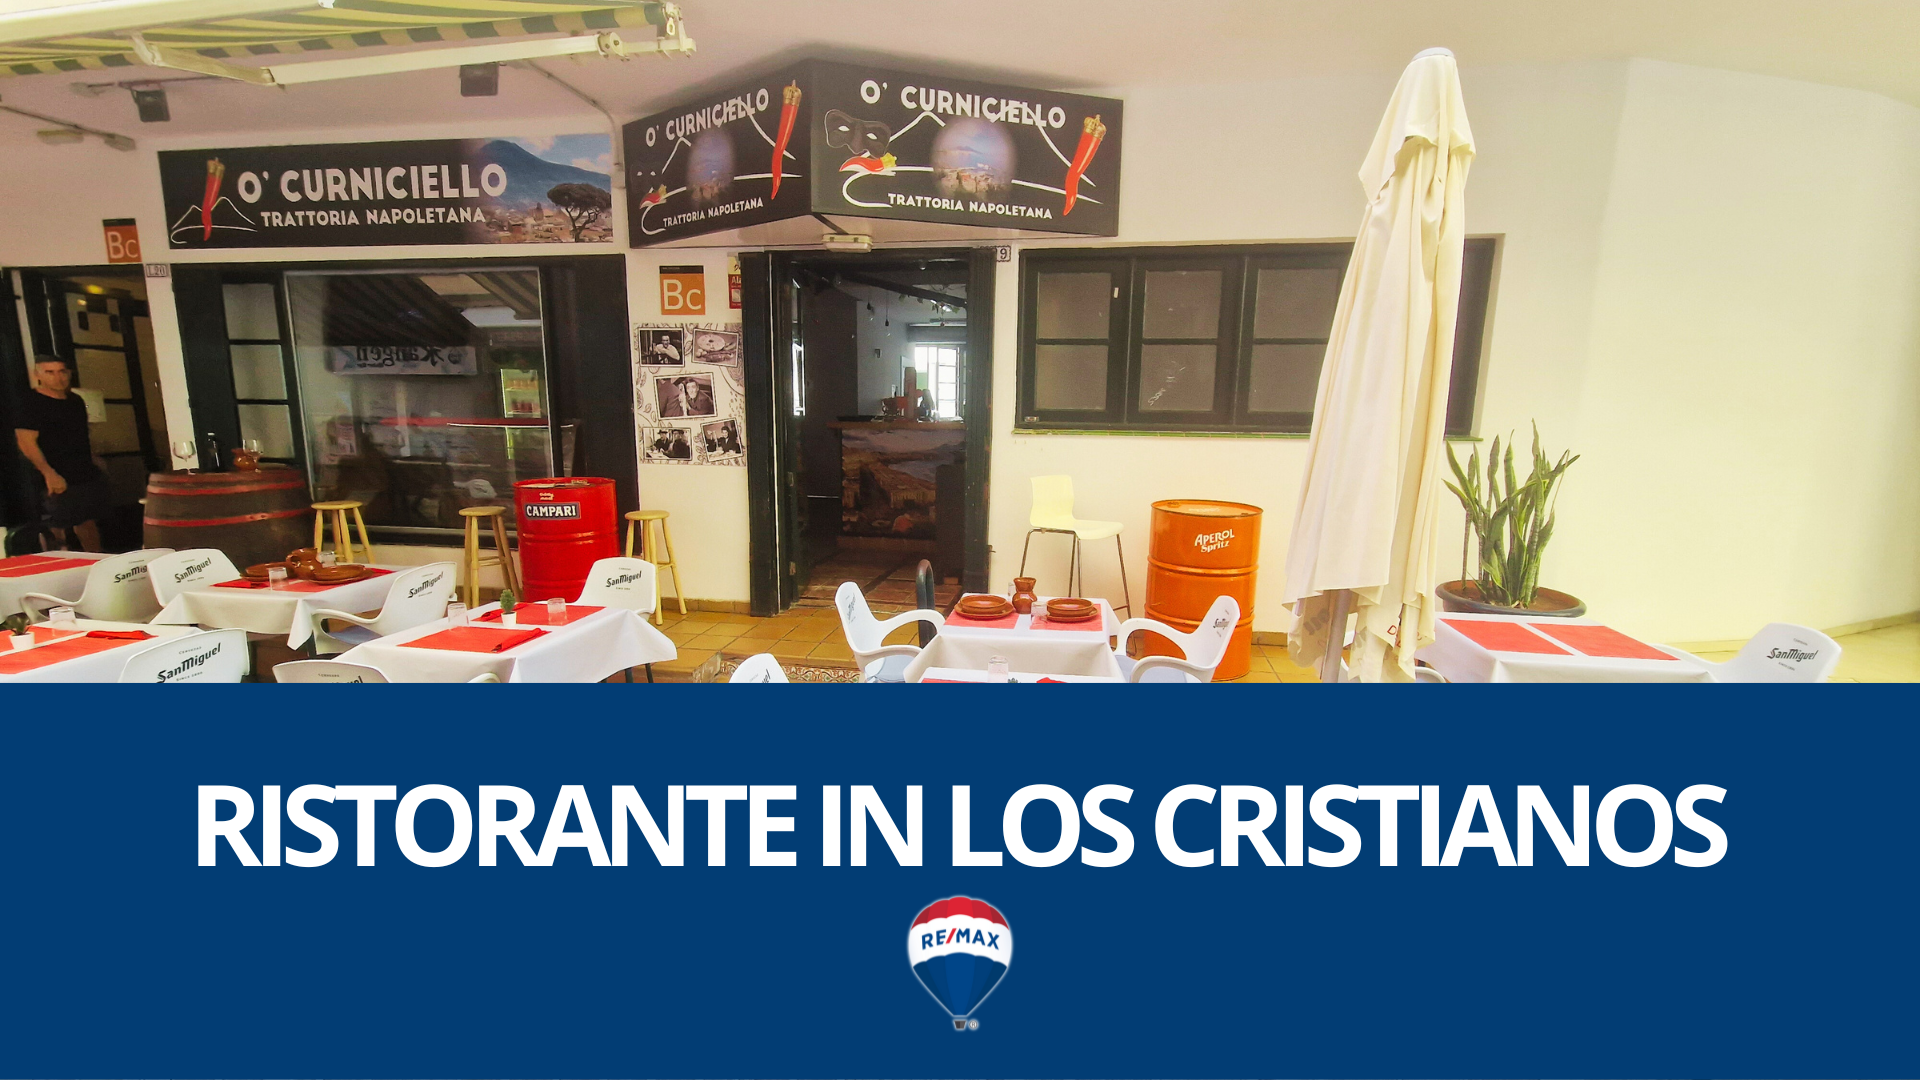 Ristorante in vendita a Los Cristianos, +34 654 95 17 25 alex.labbateremax.es